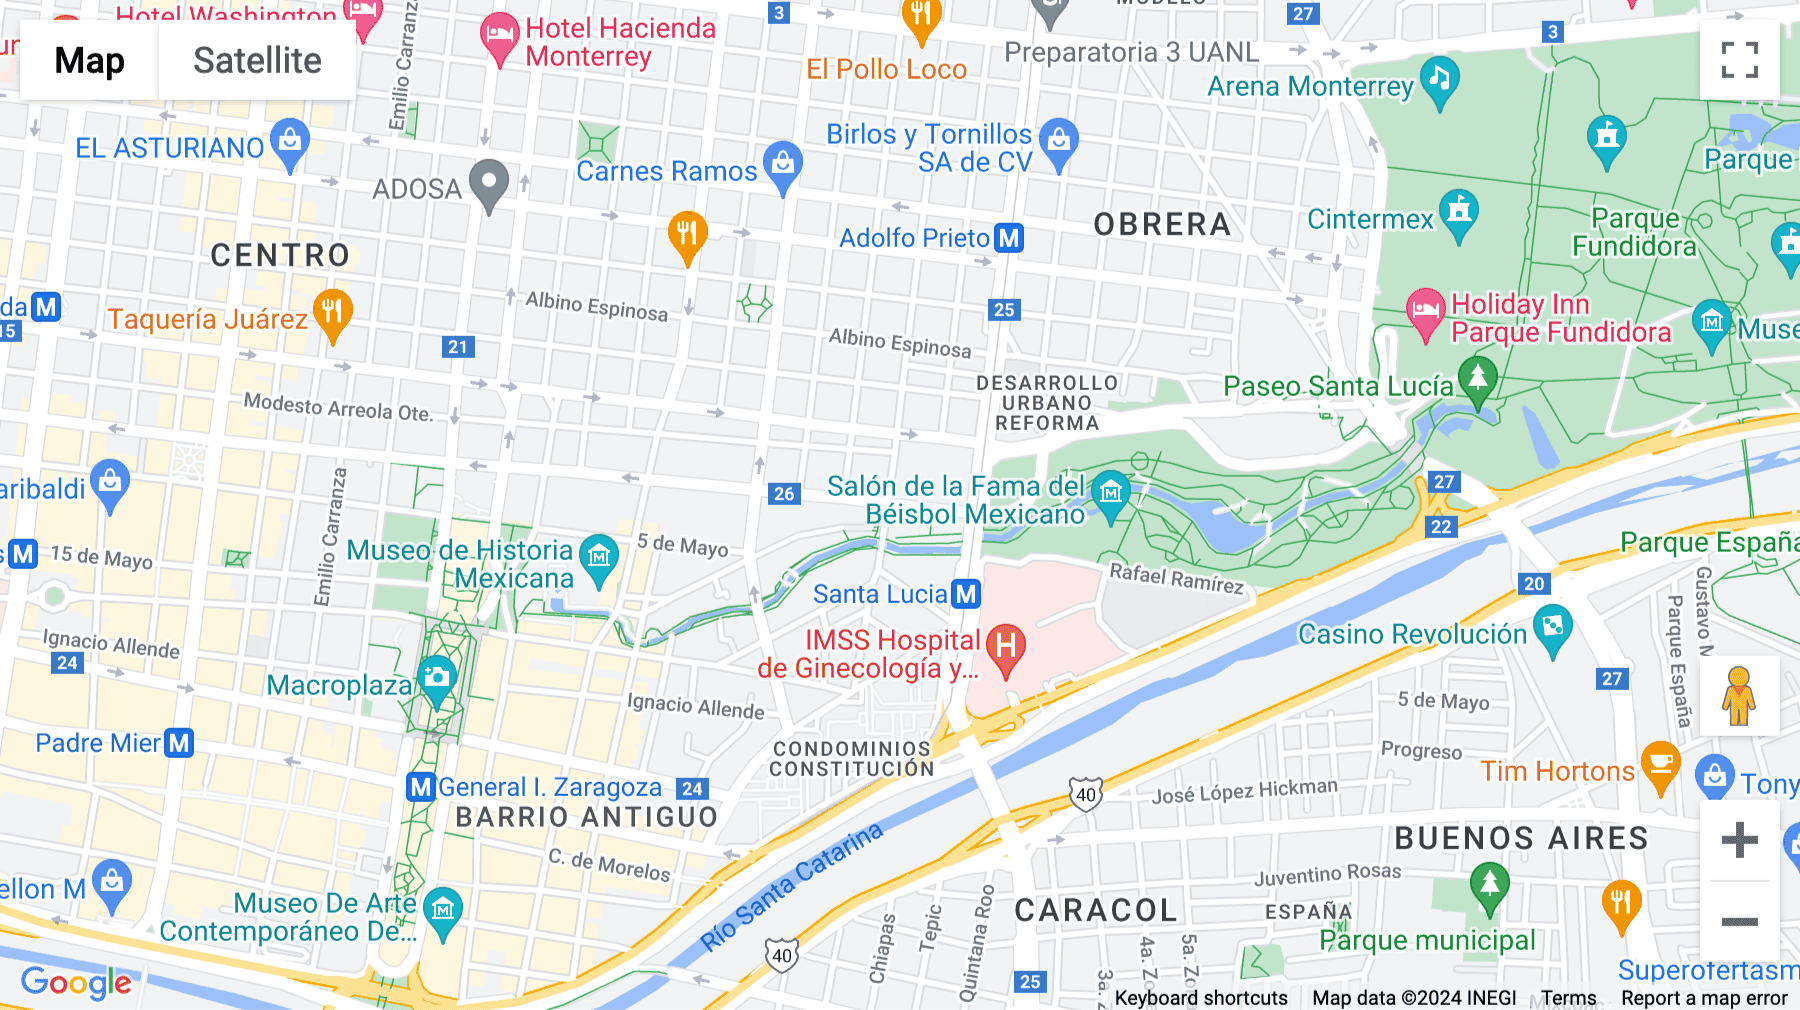 Click for interative map of Calle Washington 1400, Calle Washington, Monterrey